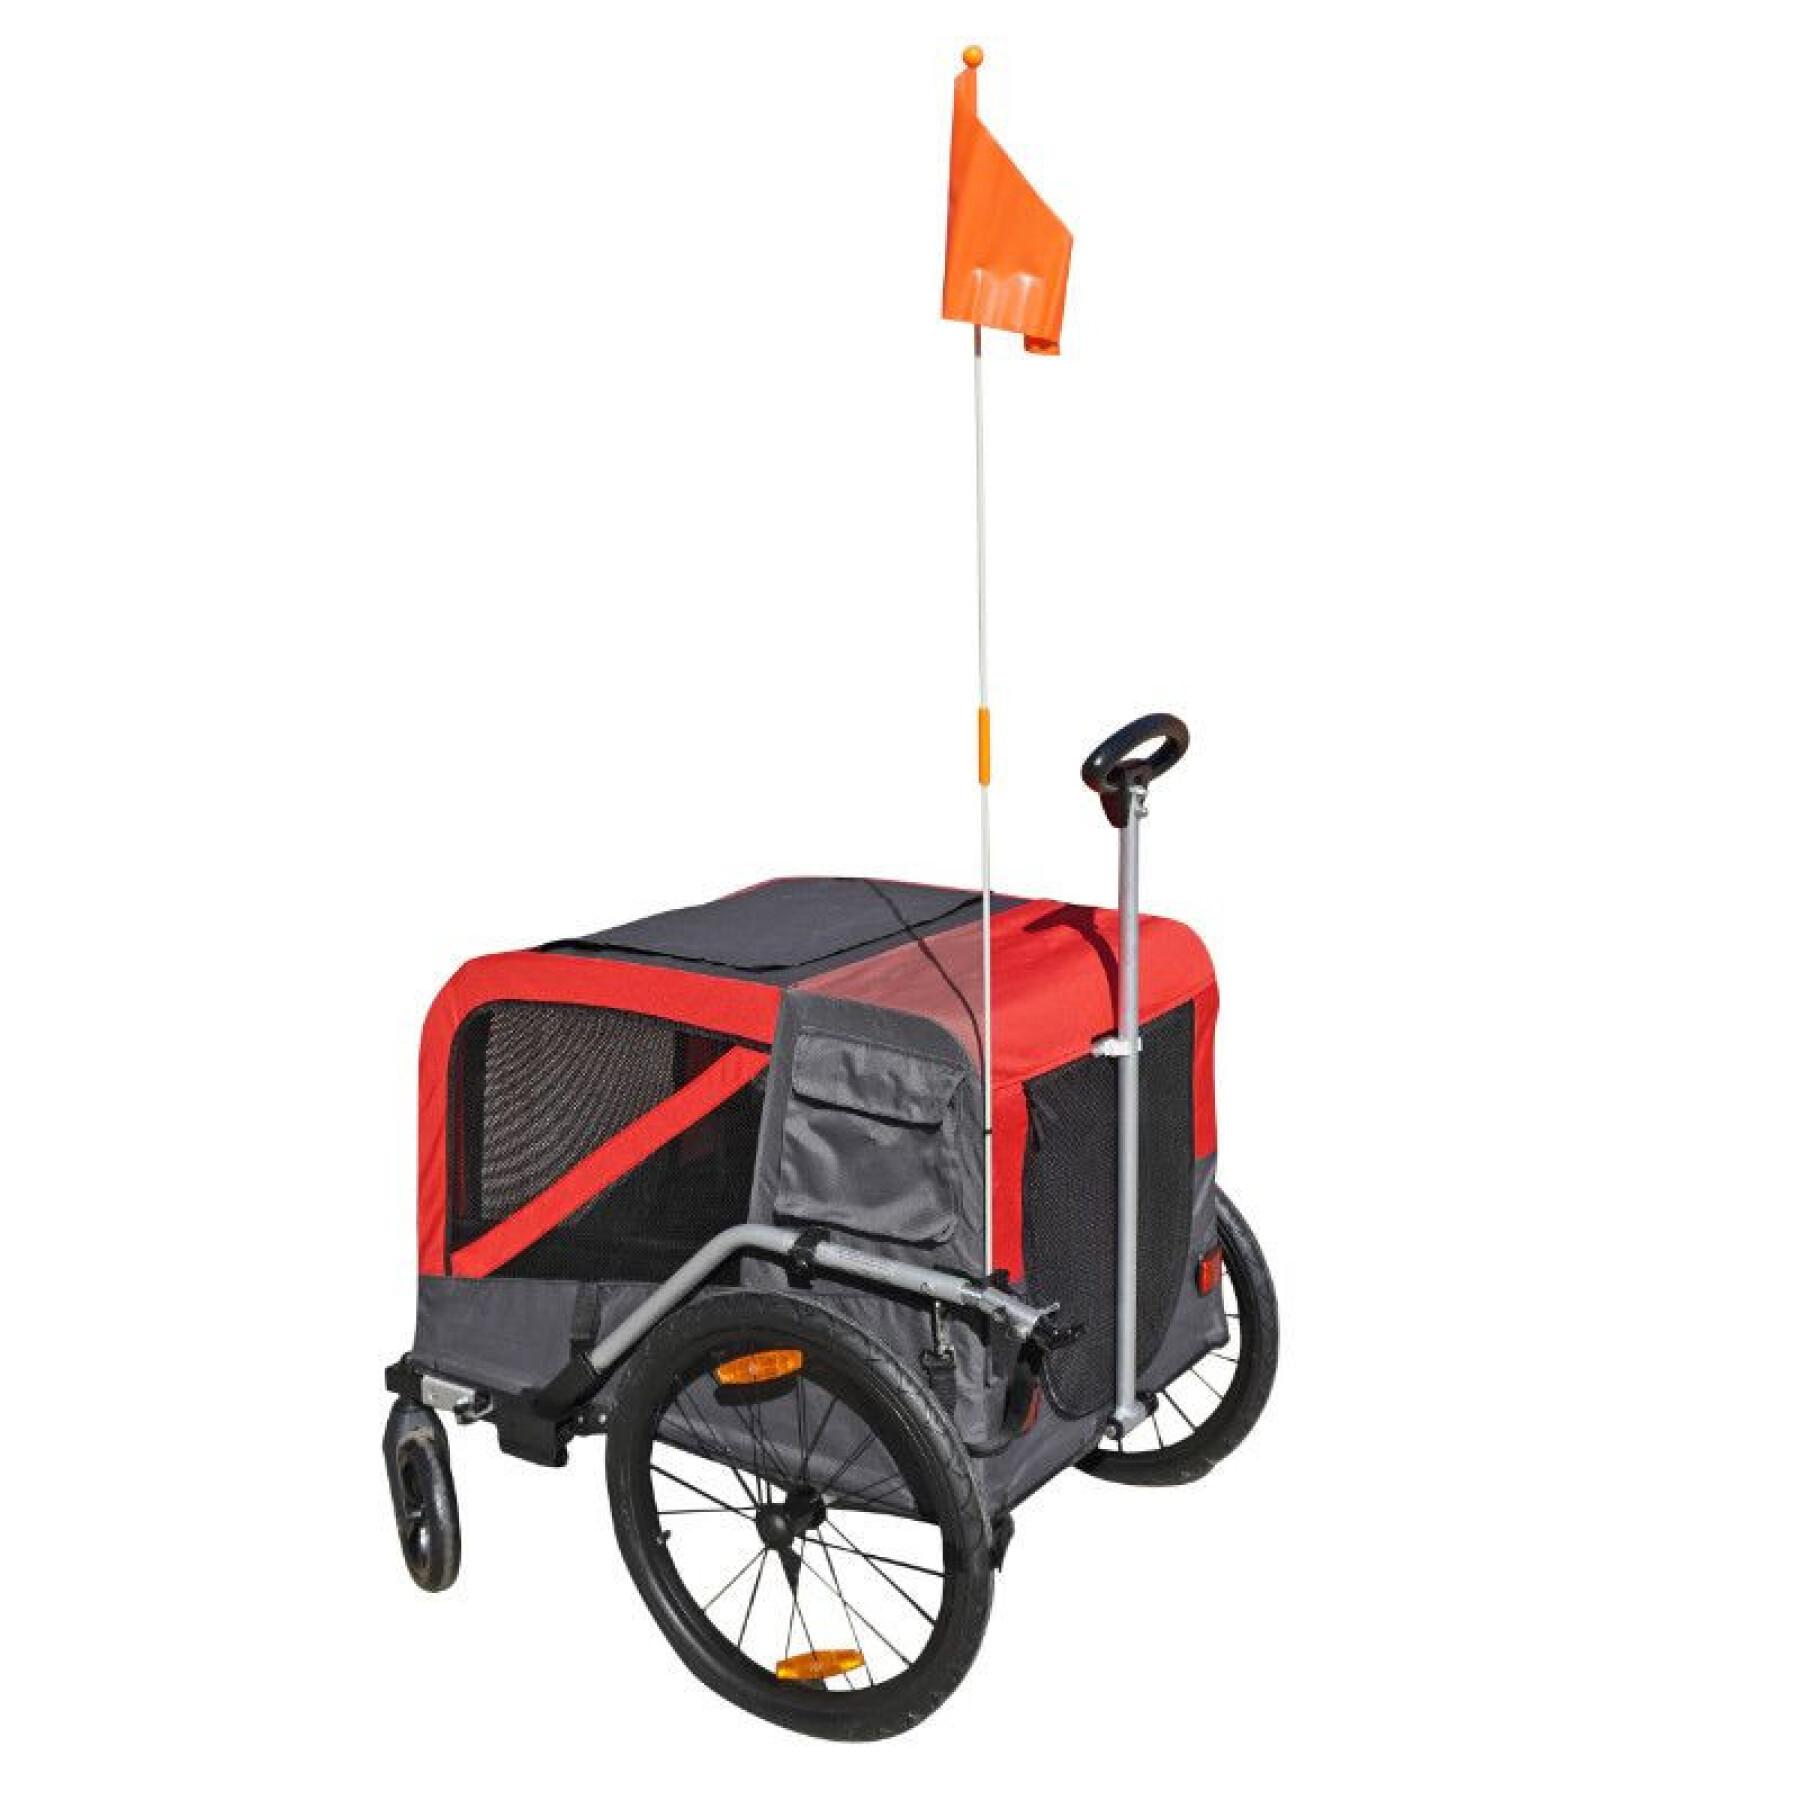 Maxi remolque de bicicleta utilitaria con ruedas de 20" y eje de rueda trasera - fondo metálico reforzado para el transporte de perros o equipaje con asa y 2 ruedas P2R